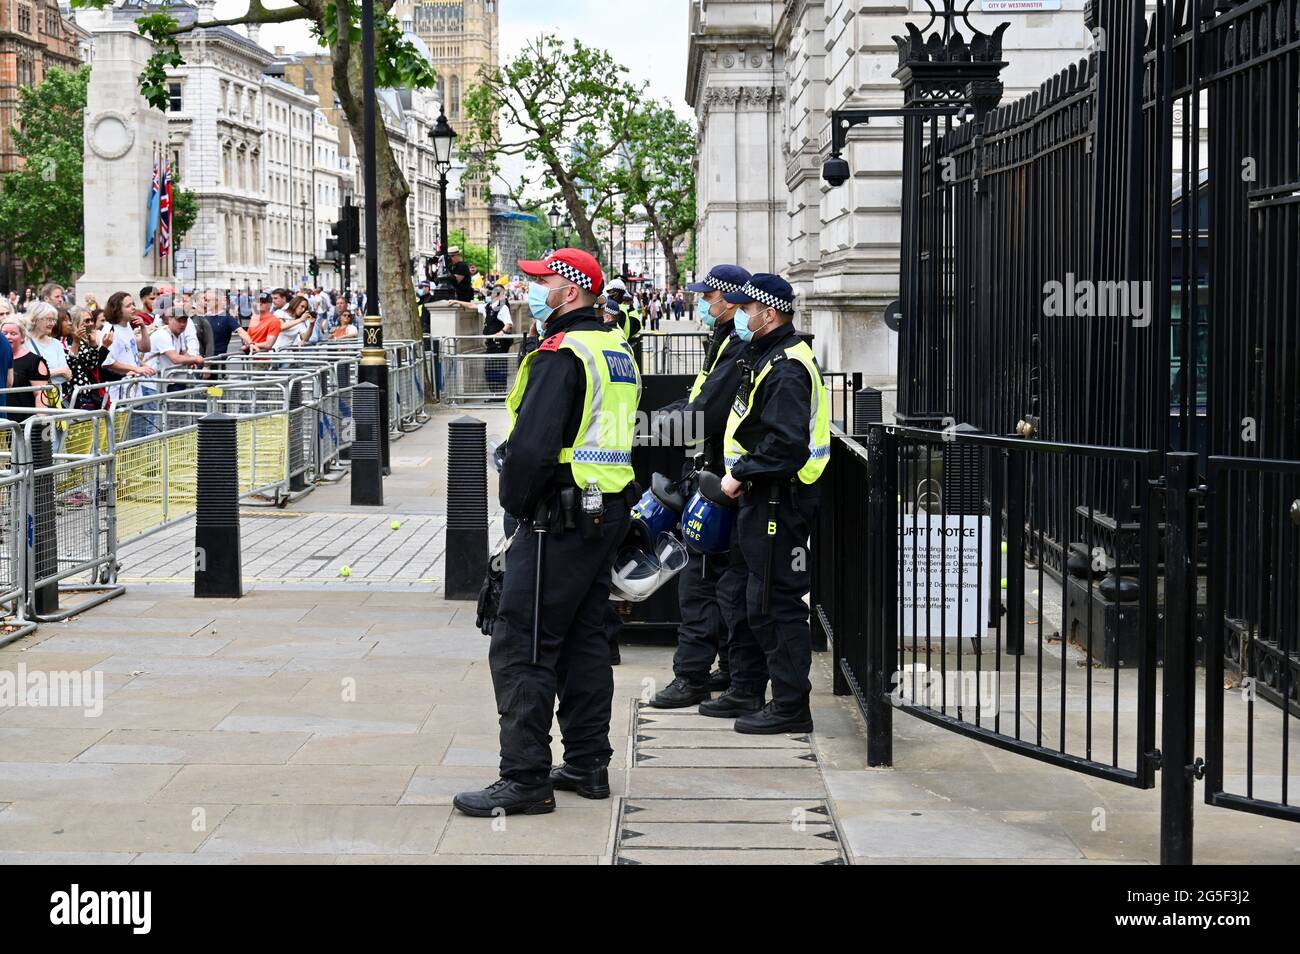 Les officiers de police métropolitaine gardent l'entrée de Downing Street tandis que des manifestants anti-verrouillage se rassemblent, Whitehall, Londres. ROYAUME-UNI Banque D'Images